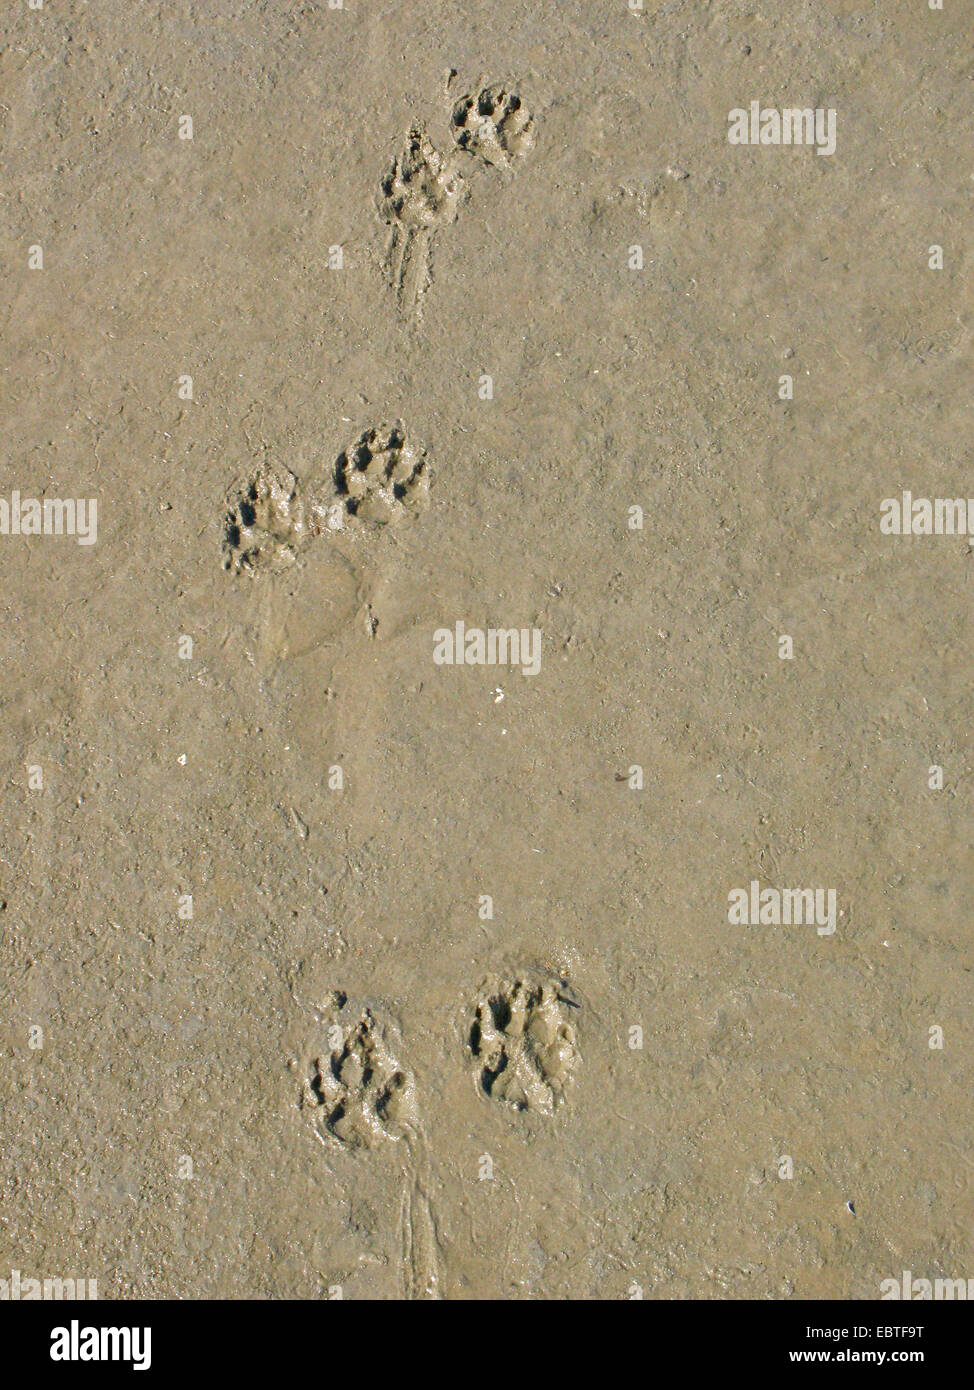 Chien domestique (Canis lupus f. familiaris), des empreintes de pas dans le sable Banque D'Images